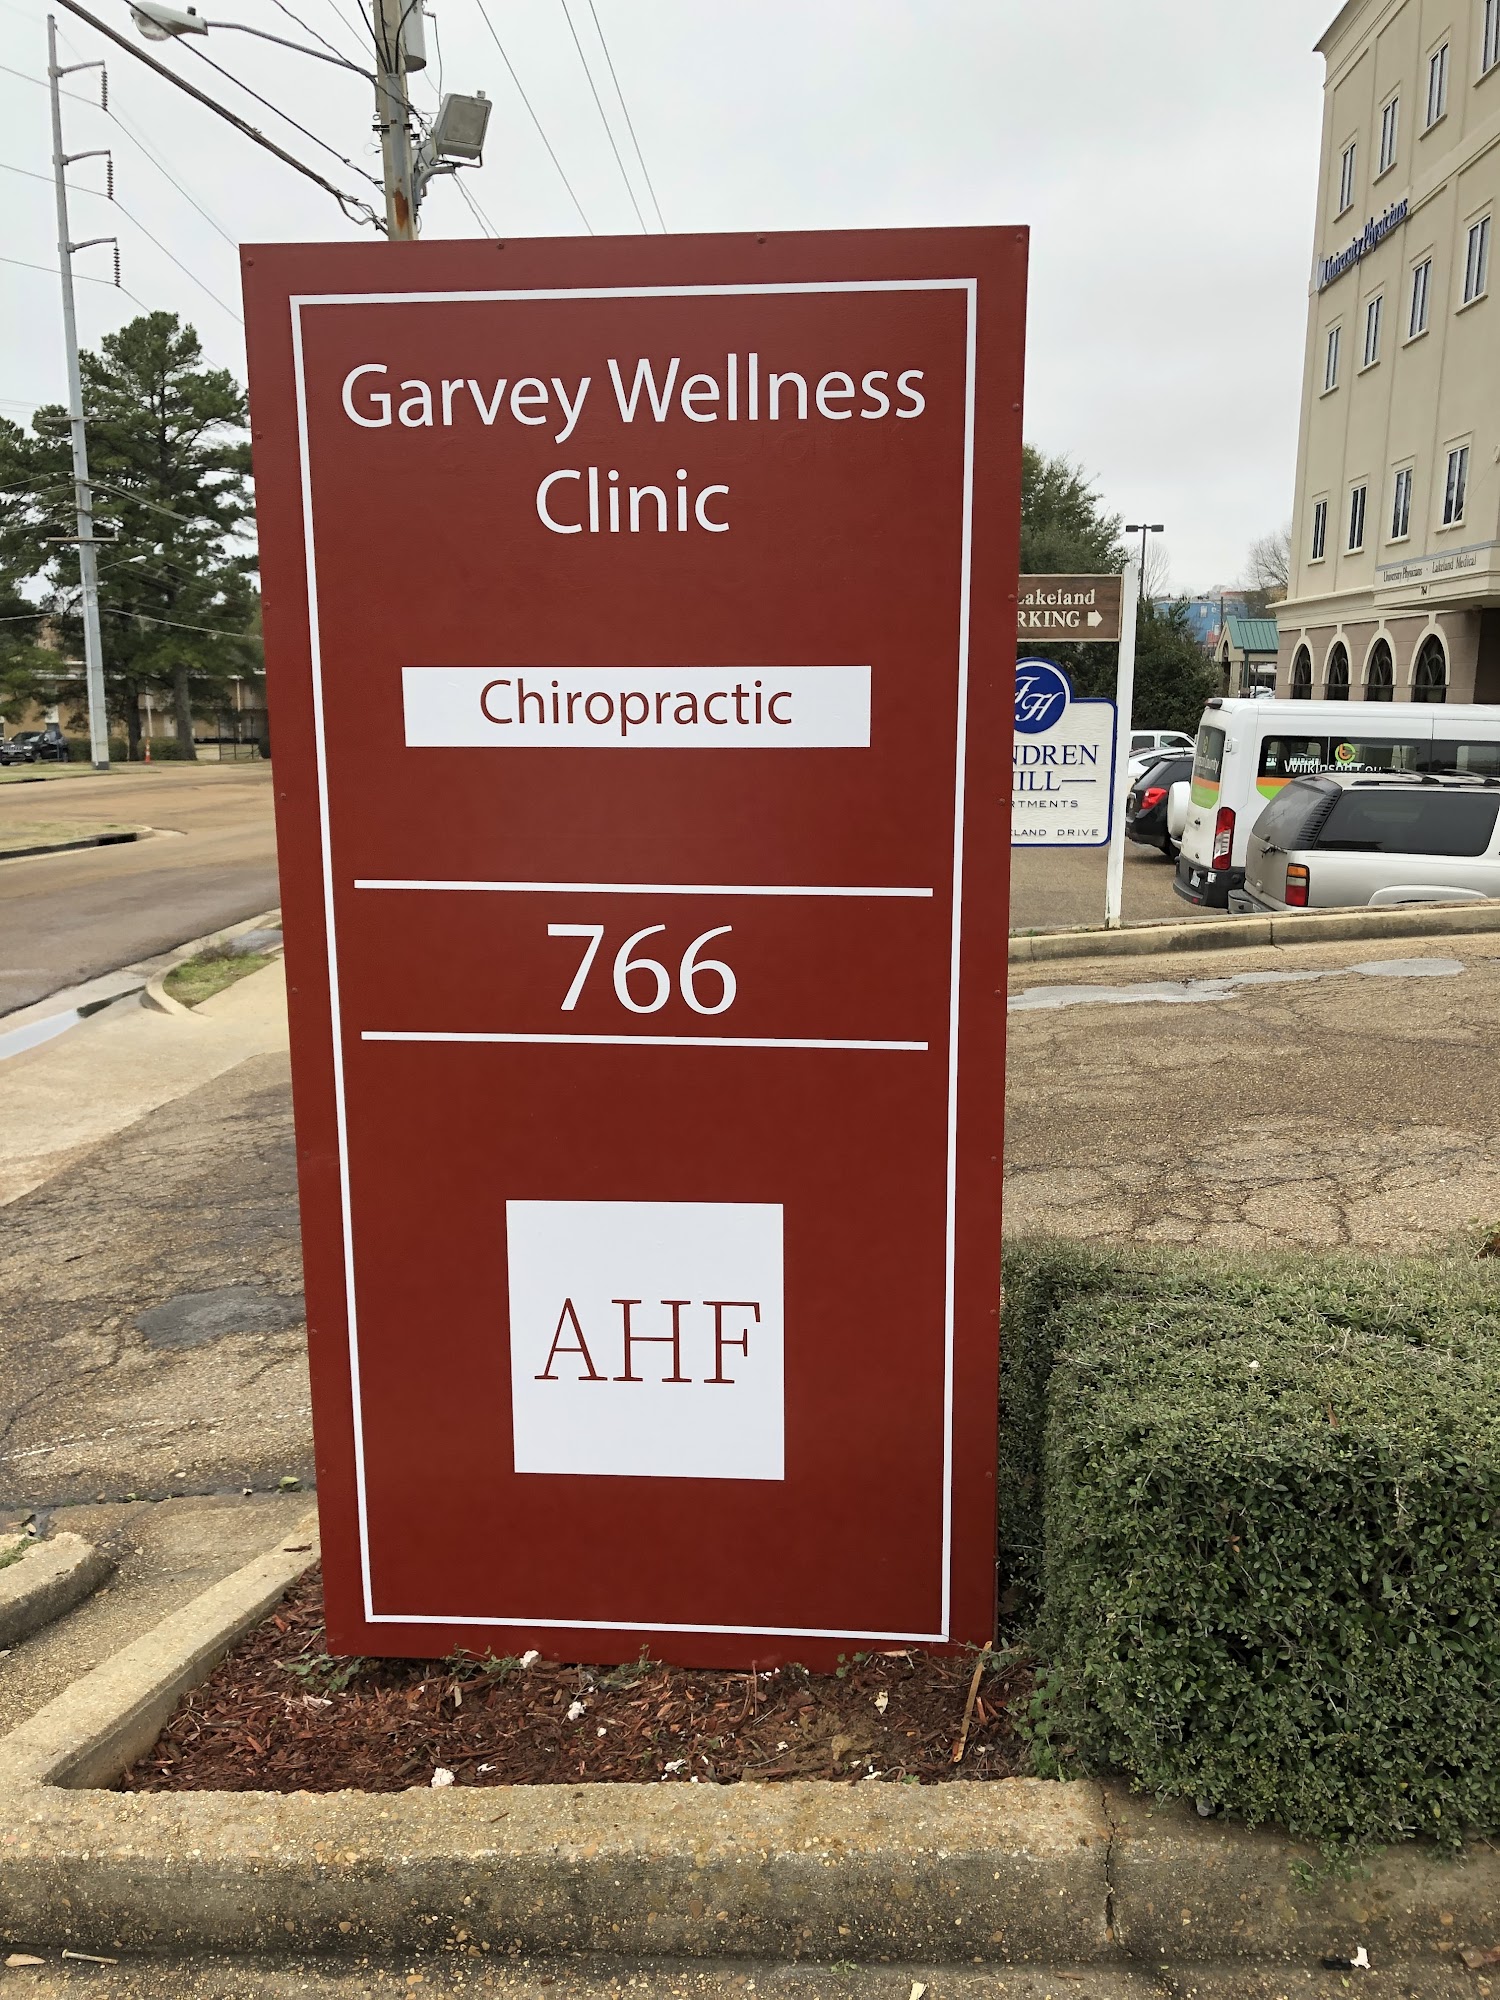 Garvey Wellness Clinic